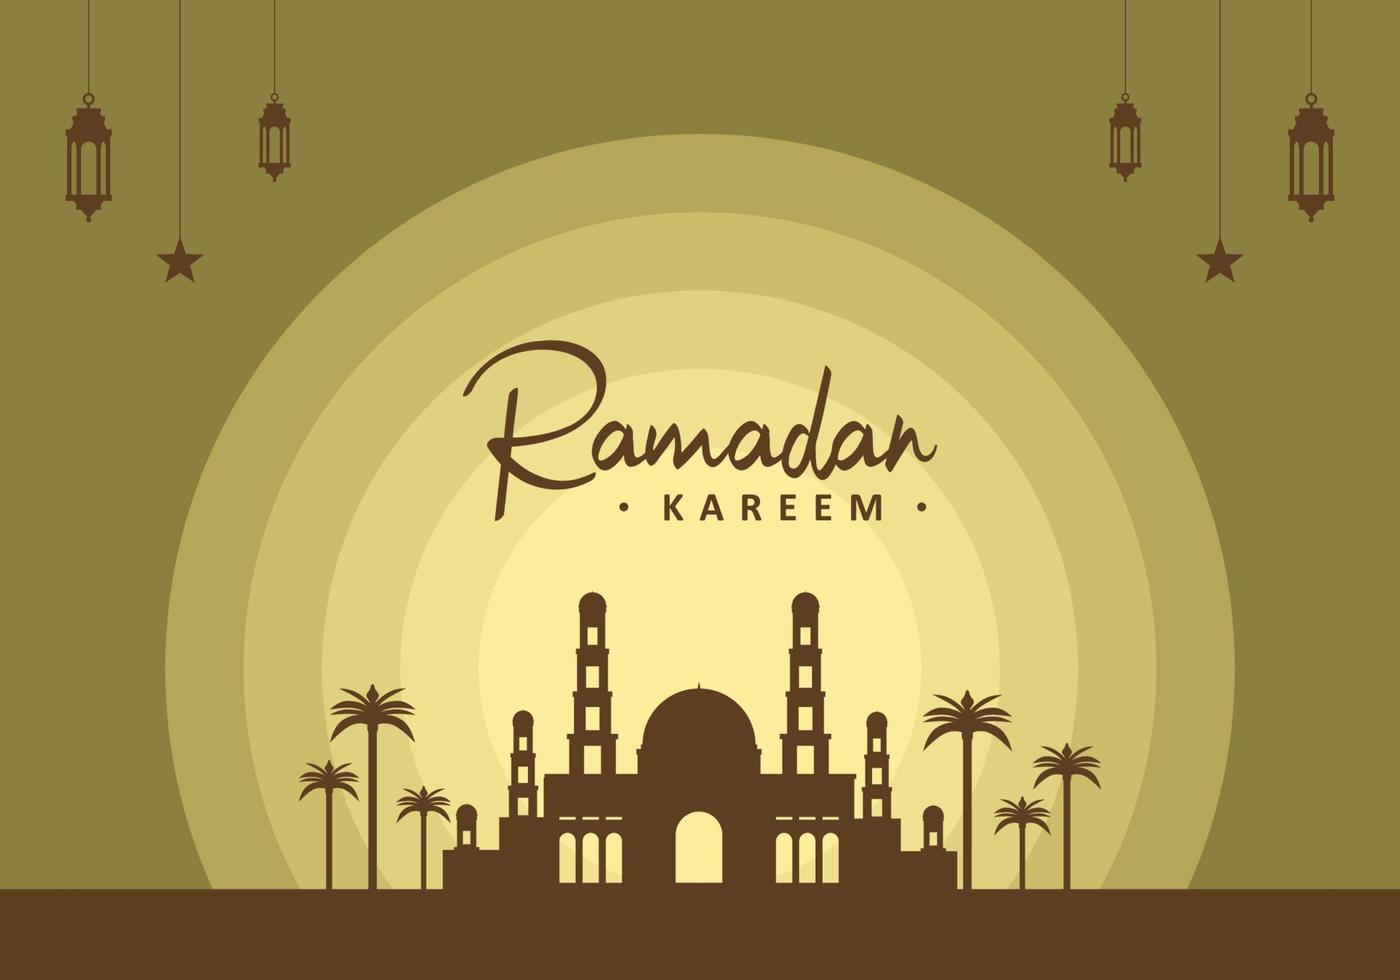 fond de ramadan kareem avec lanterne, étoiles, palmier et grande mosquée. vecteur